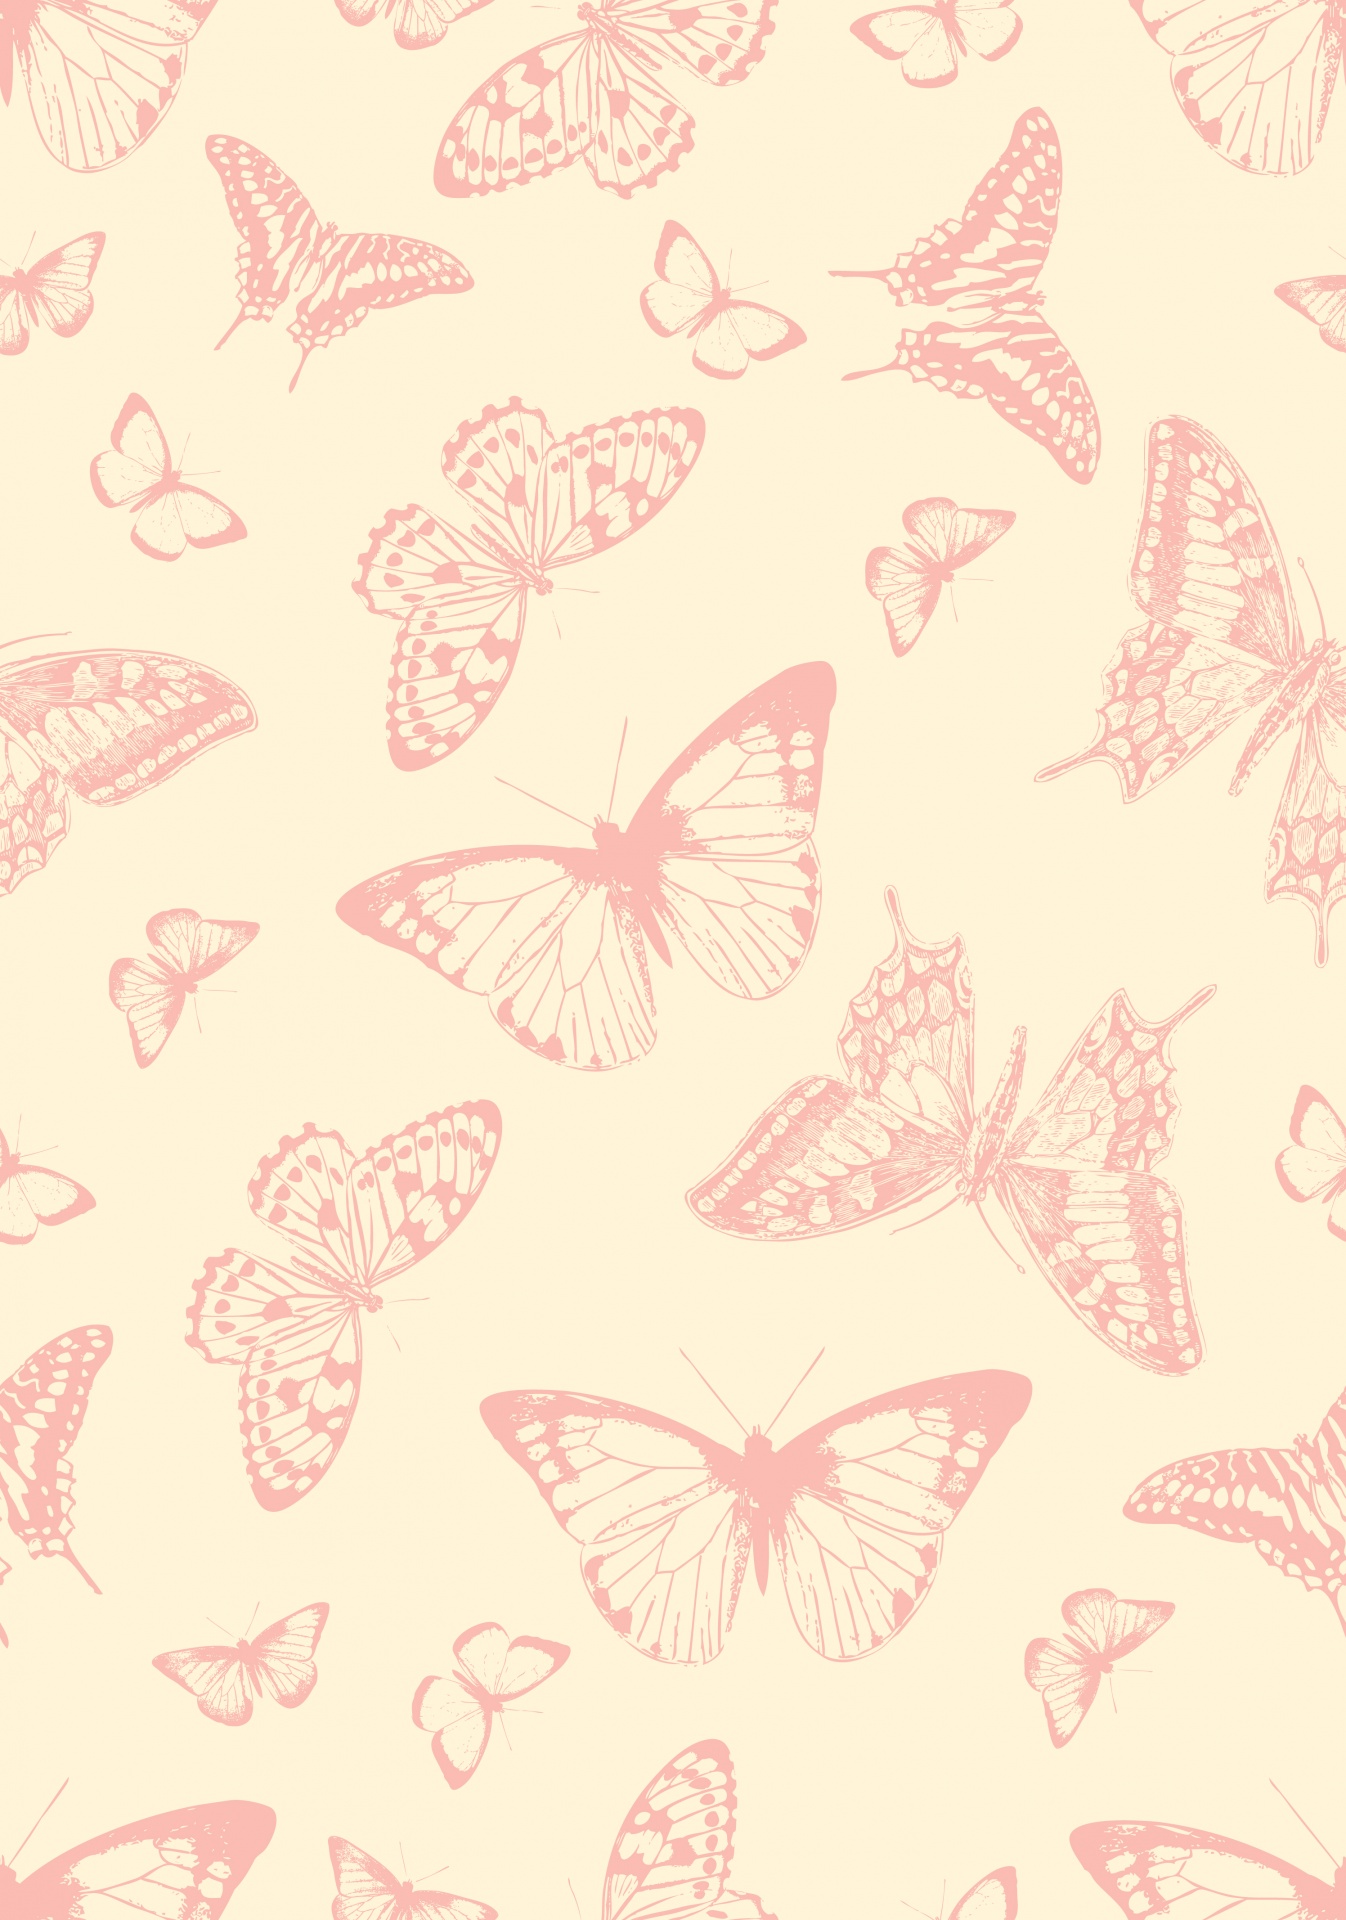 Butterflies Butterfly Wallpaper Free Picture - Fondo De Mariposas Vintage , HD Wallpaper & Backgrounds